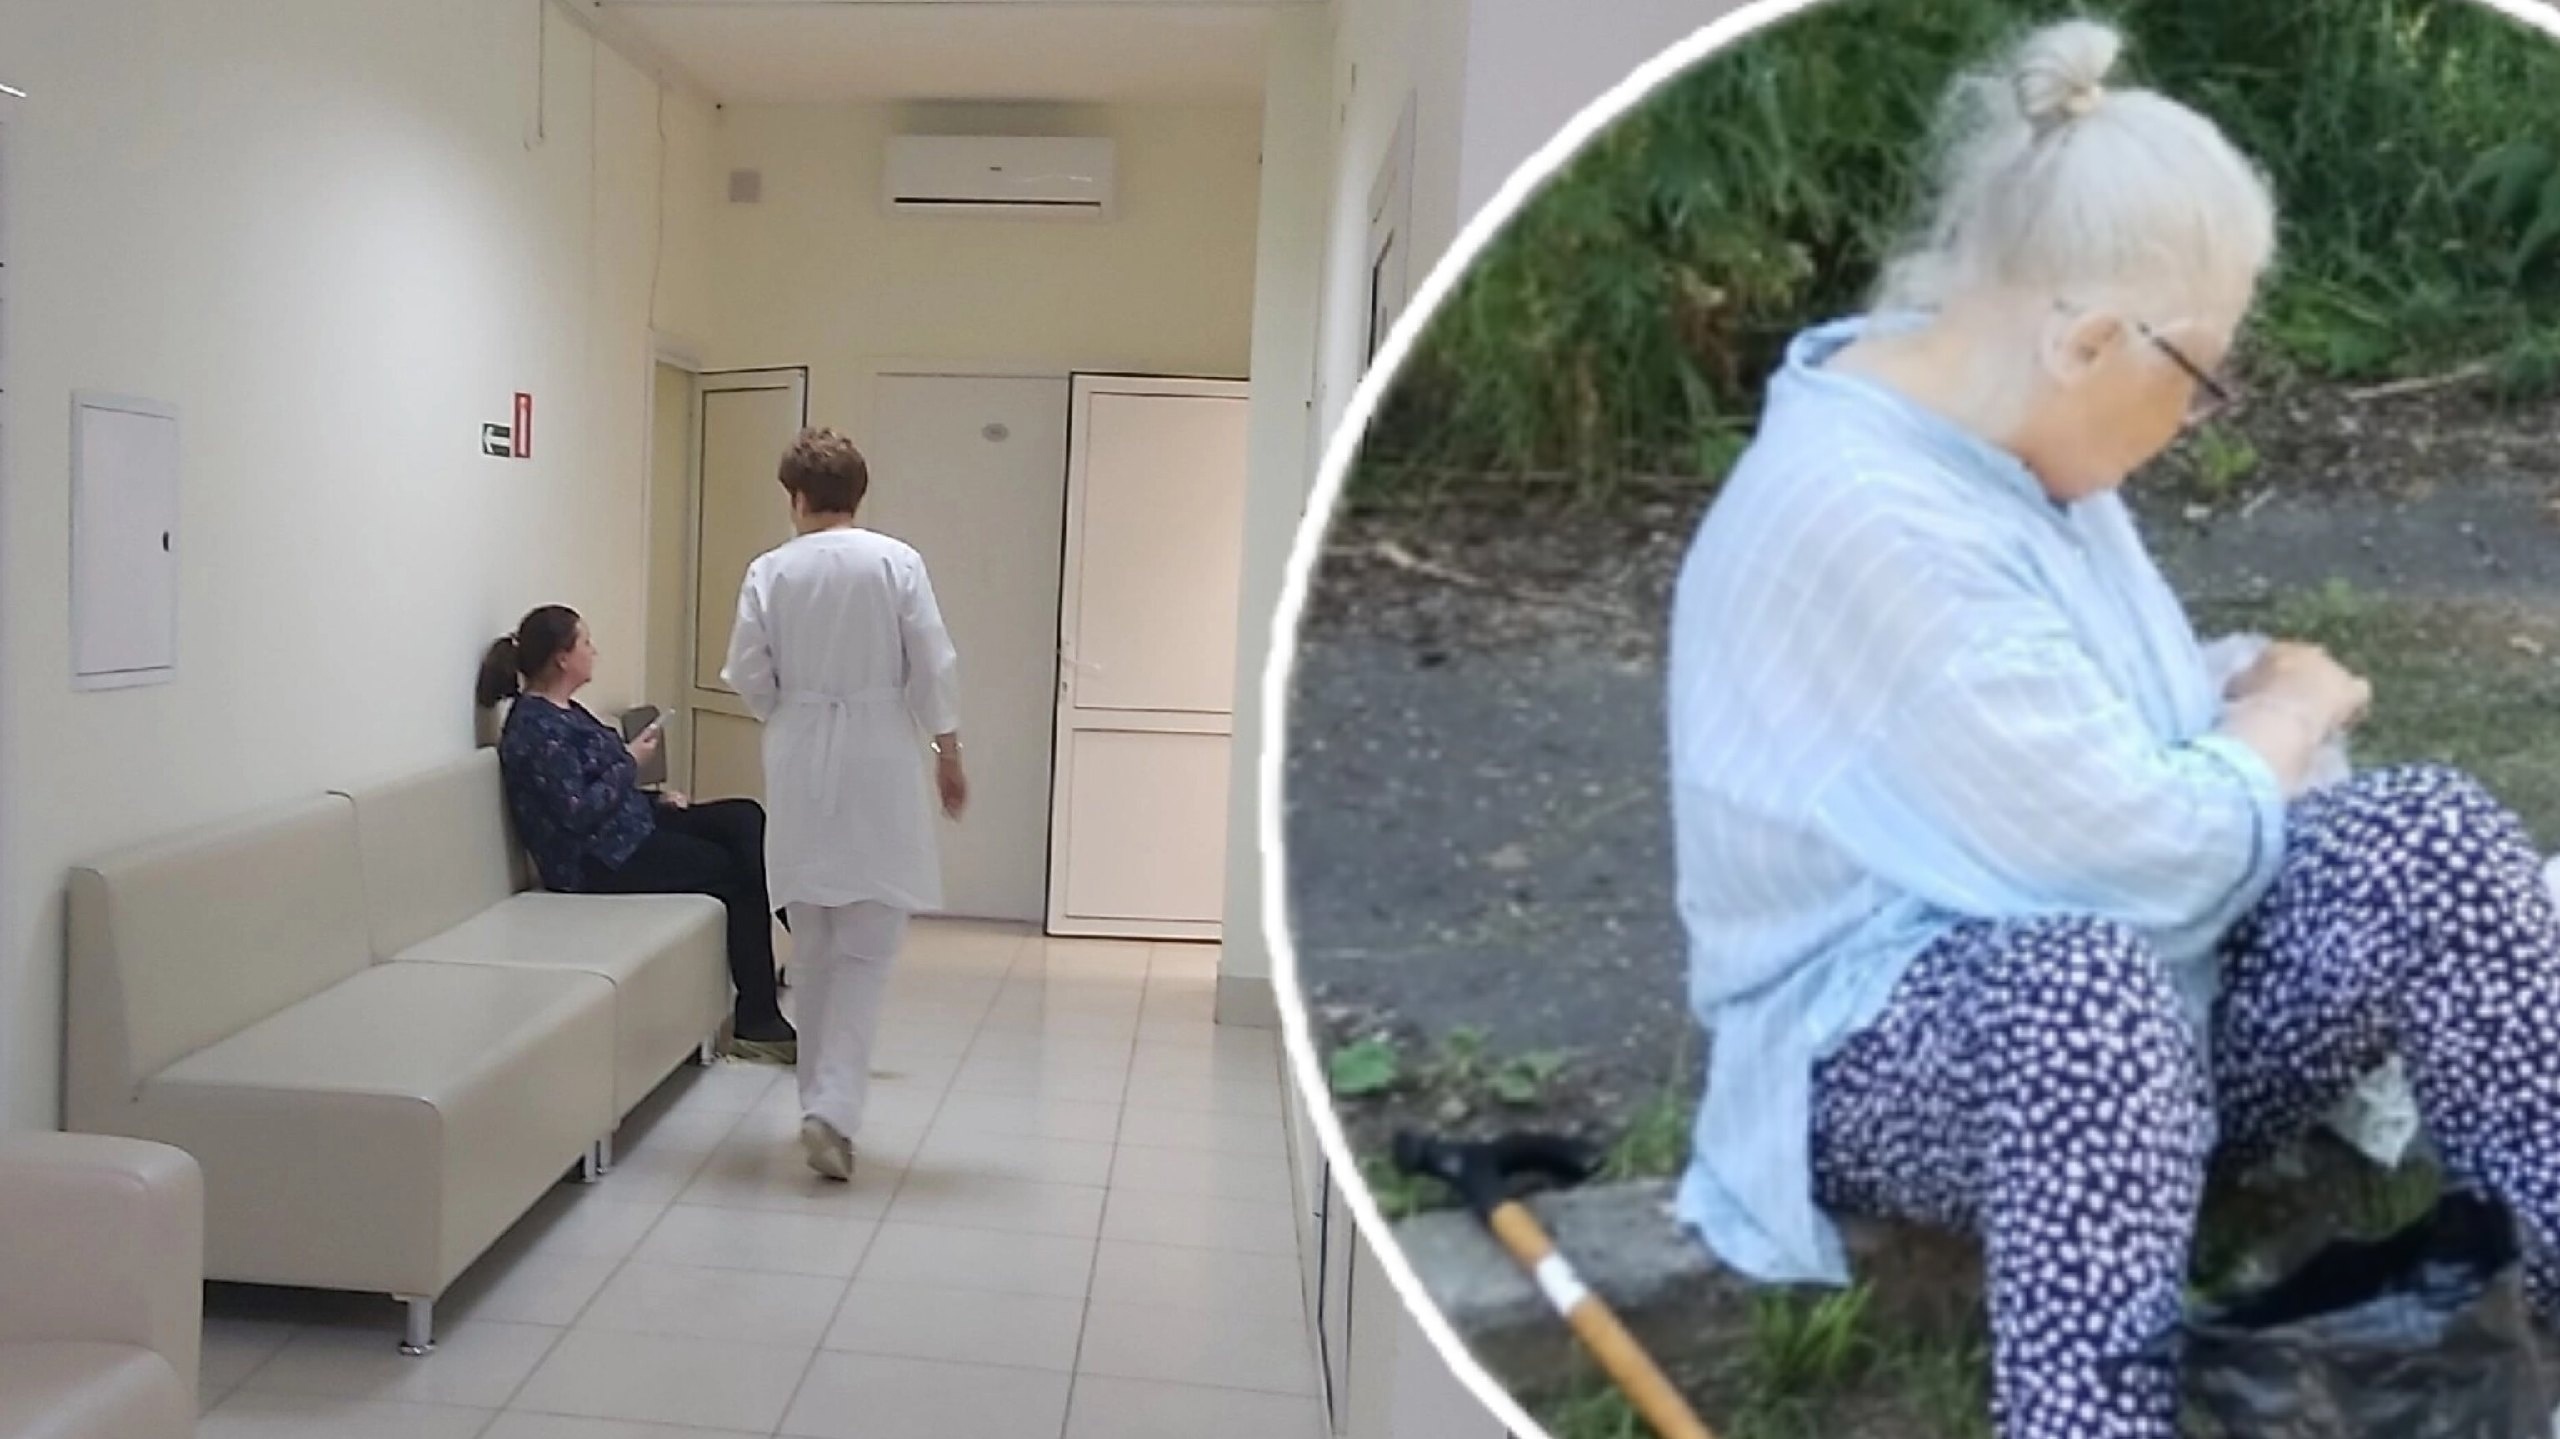 Бабушка из Рыбинска специально лежит на улице, чтобы пожить в больнице